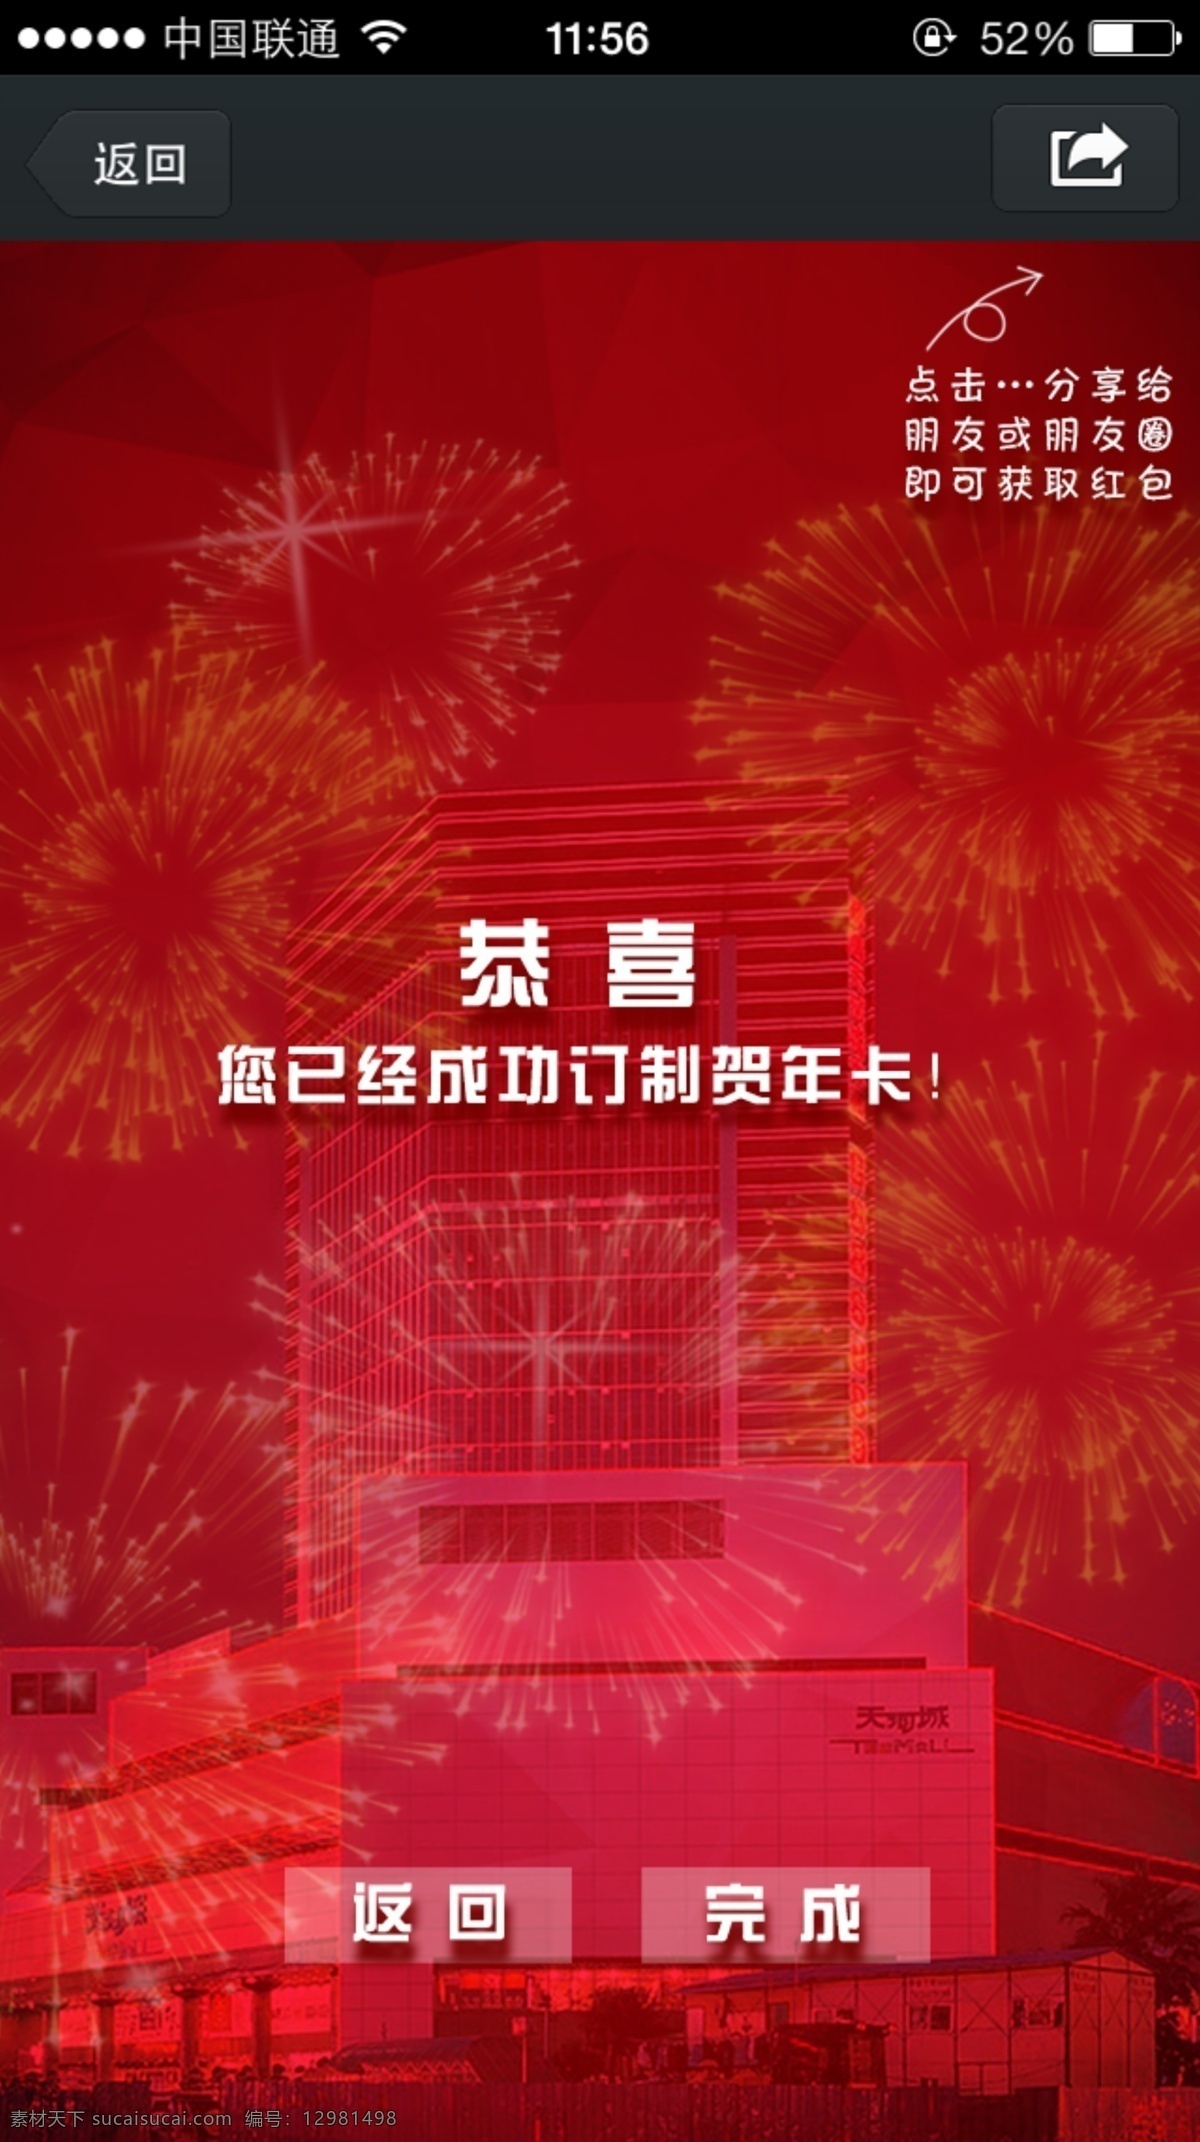 app 分享 界面 手机 天河城 微信 烟花 喜庆 缤纷 热烈 移动界面设计 手机界面 红色